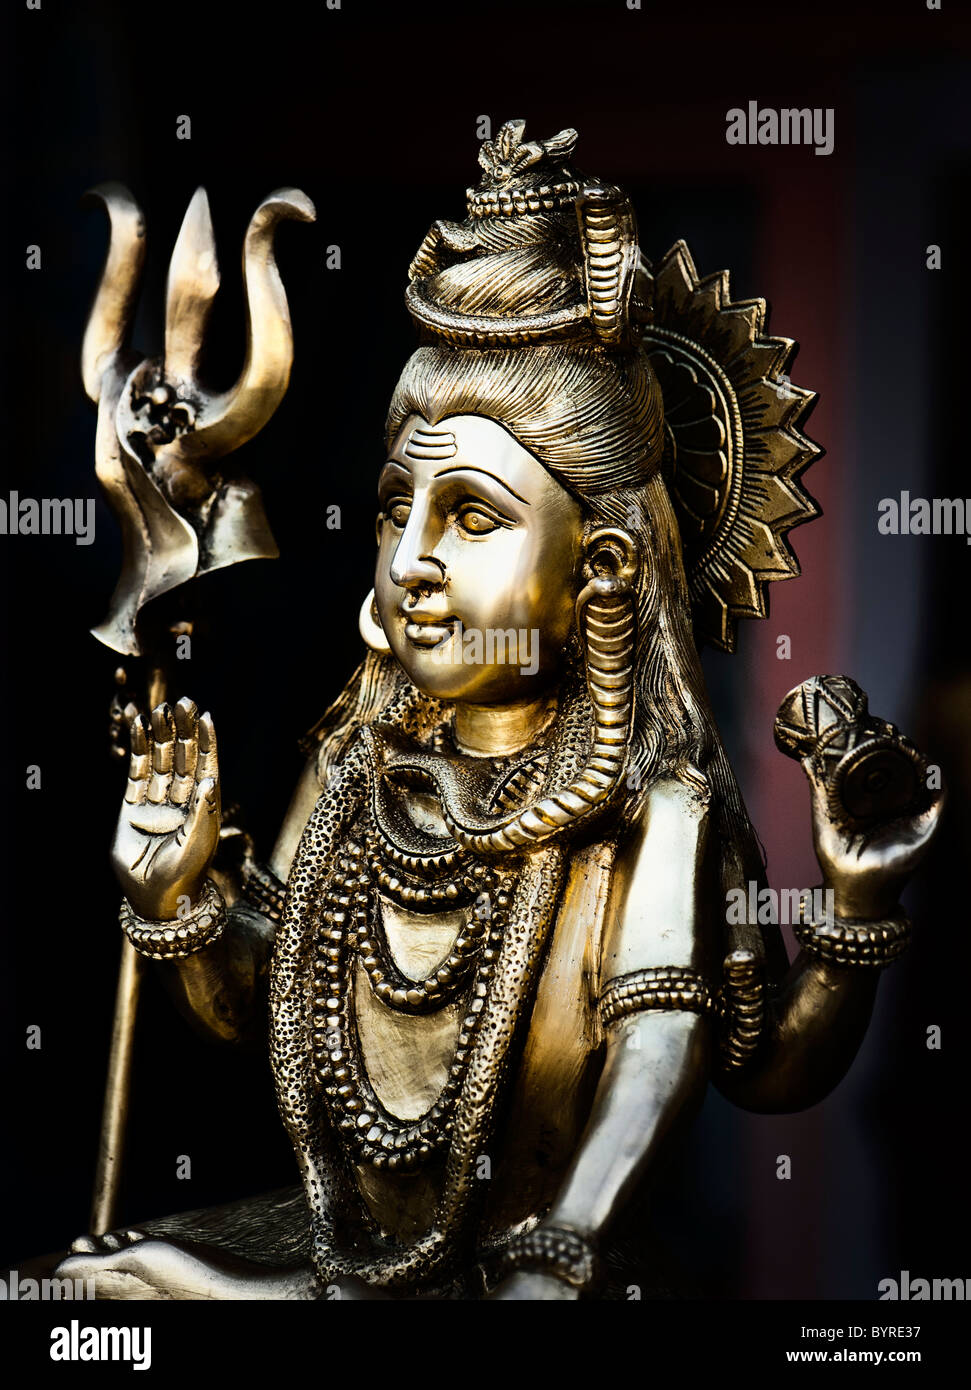 Lord Shiva, der indische Gottheit Statue. Indien Stockfoto